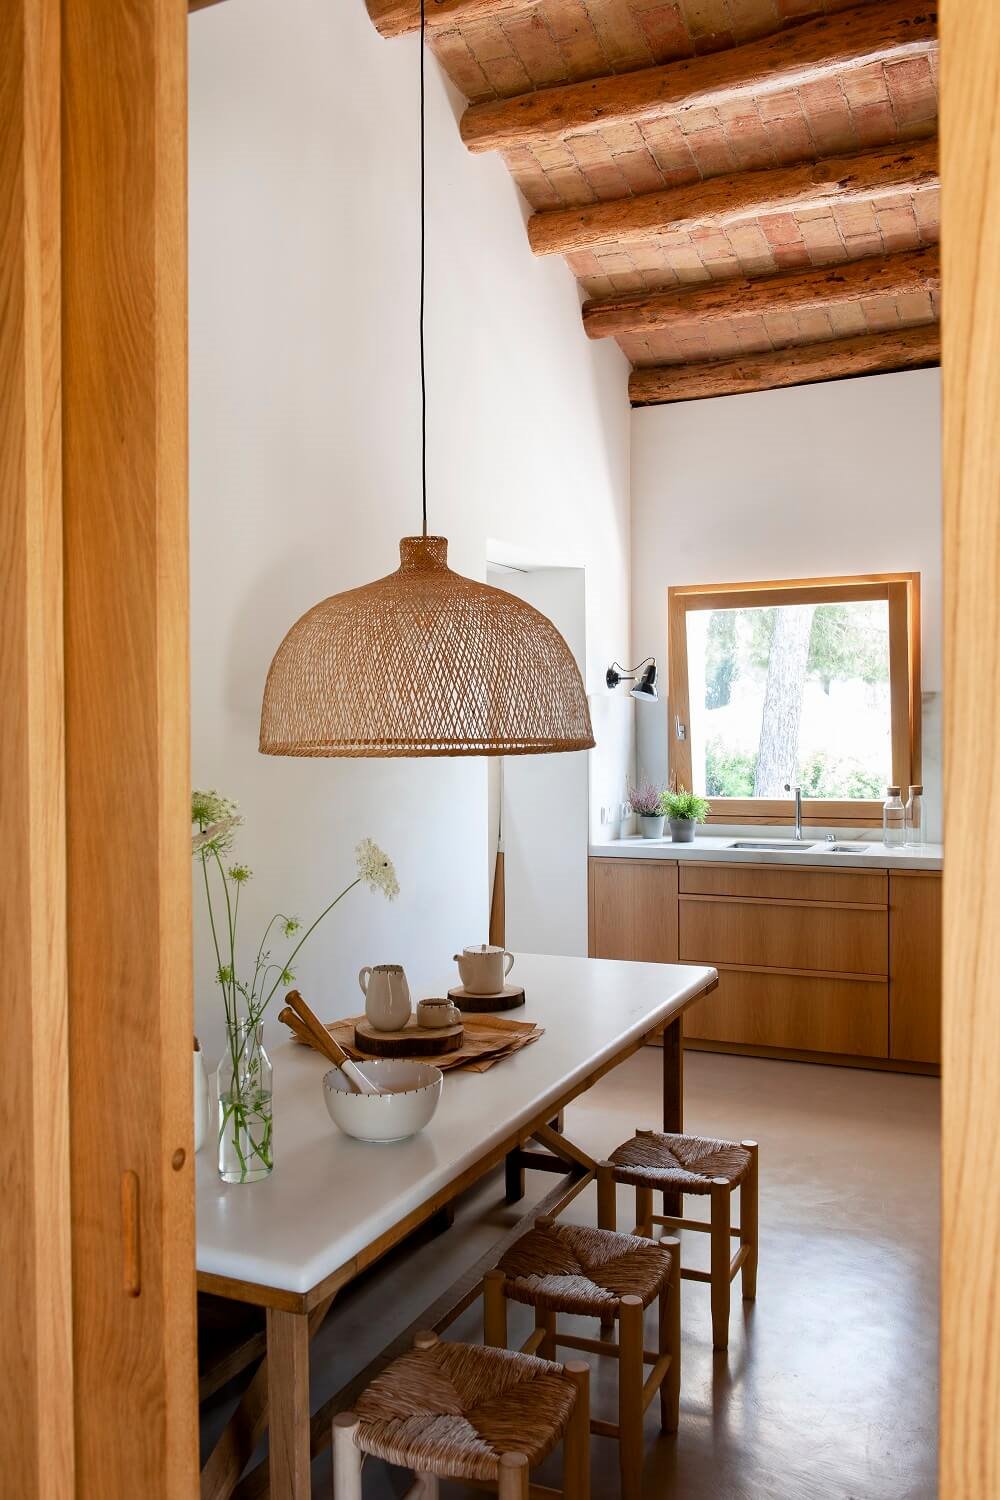 Cocina con office con lámpara de mimbre en cocina rústica y cubierta catalana.